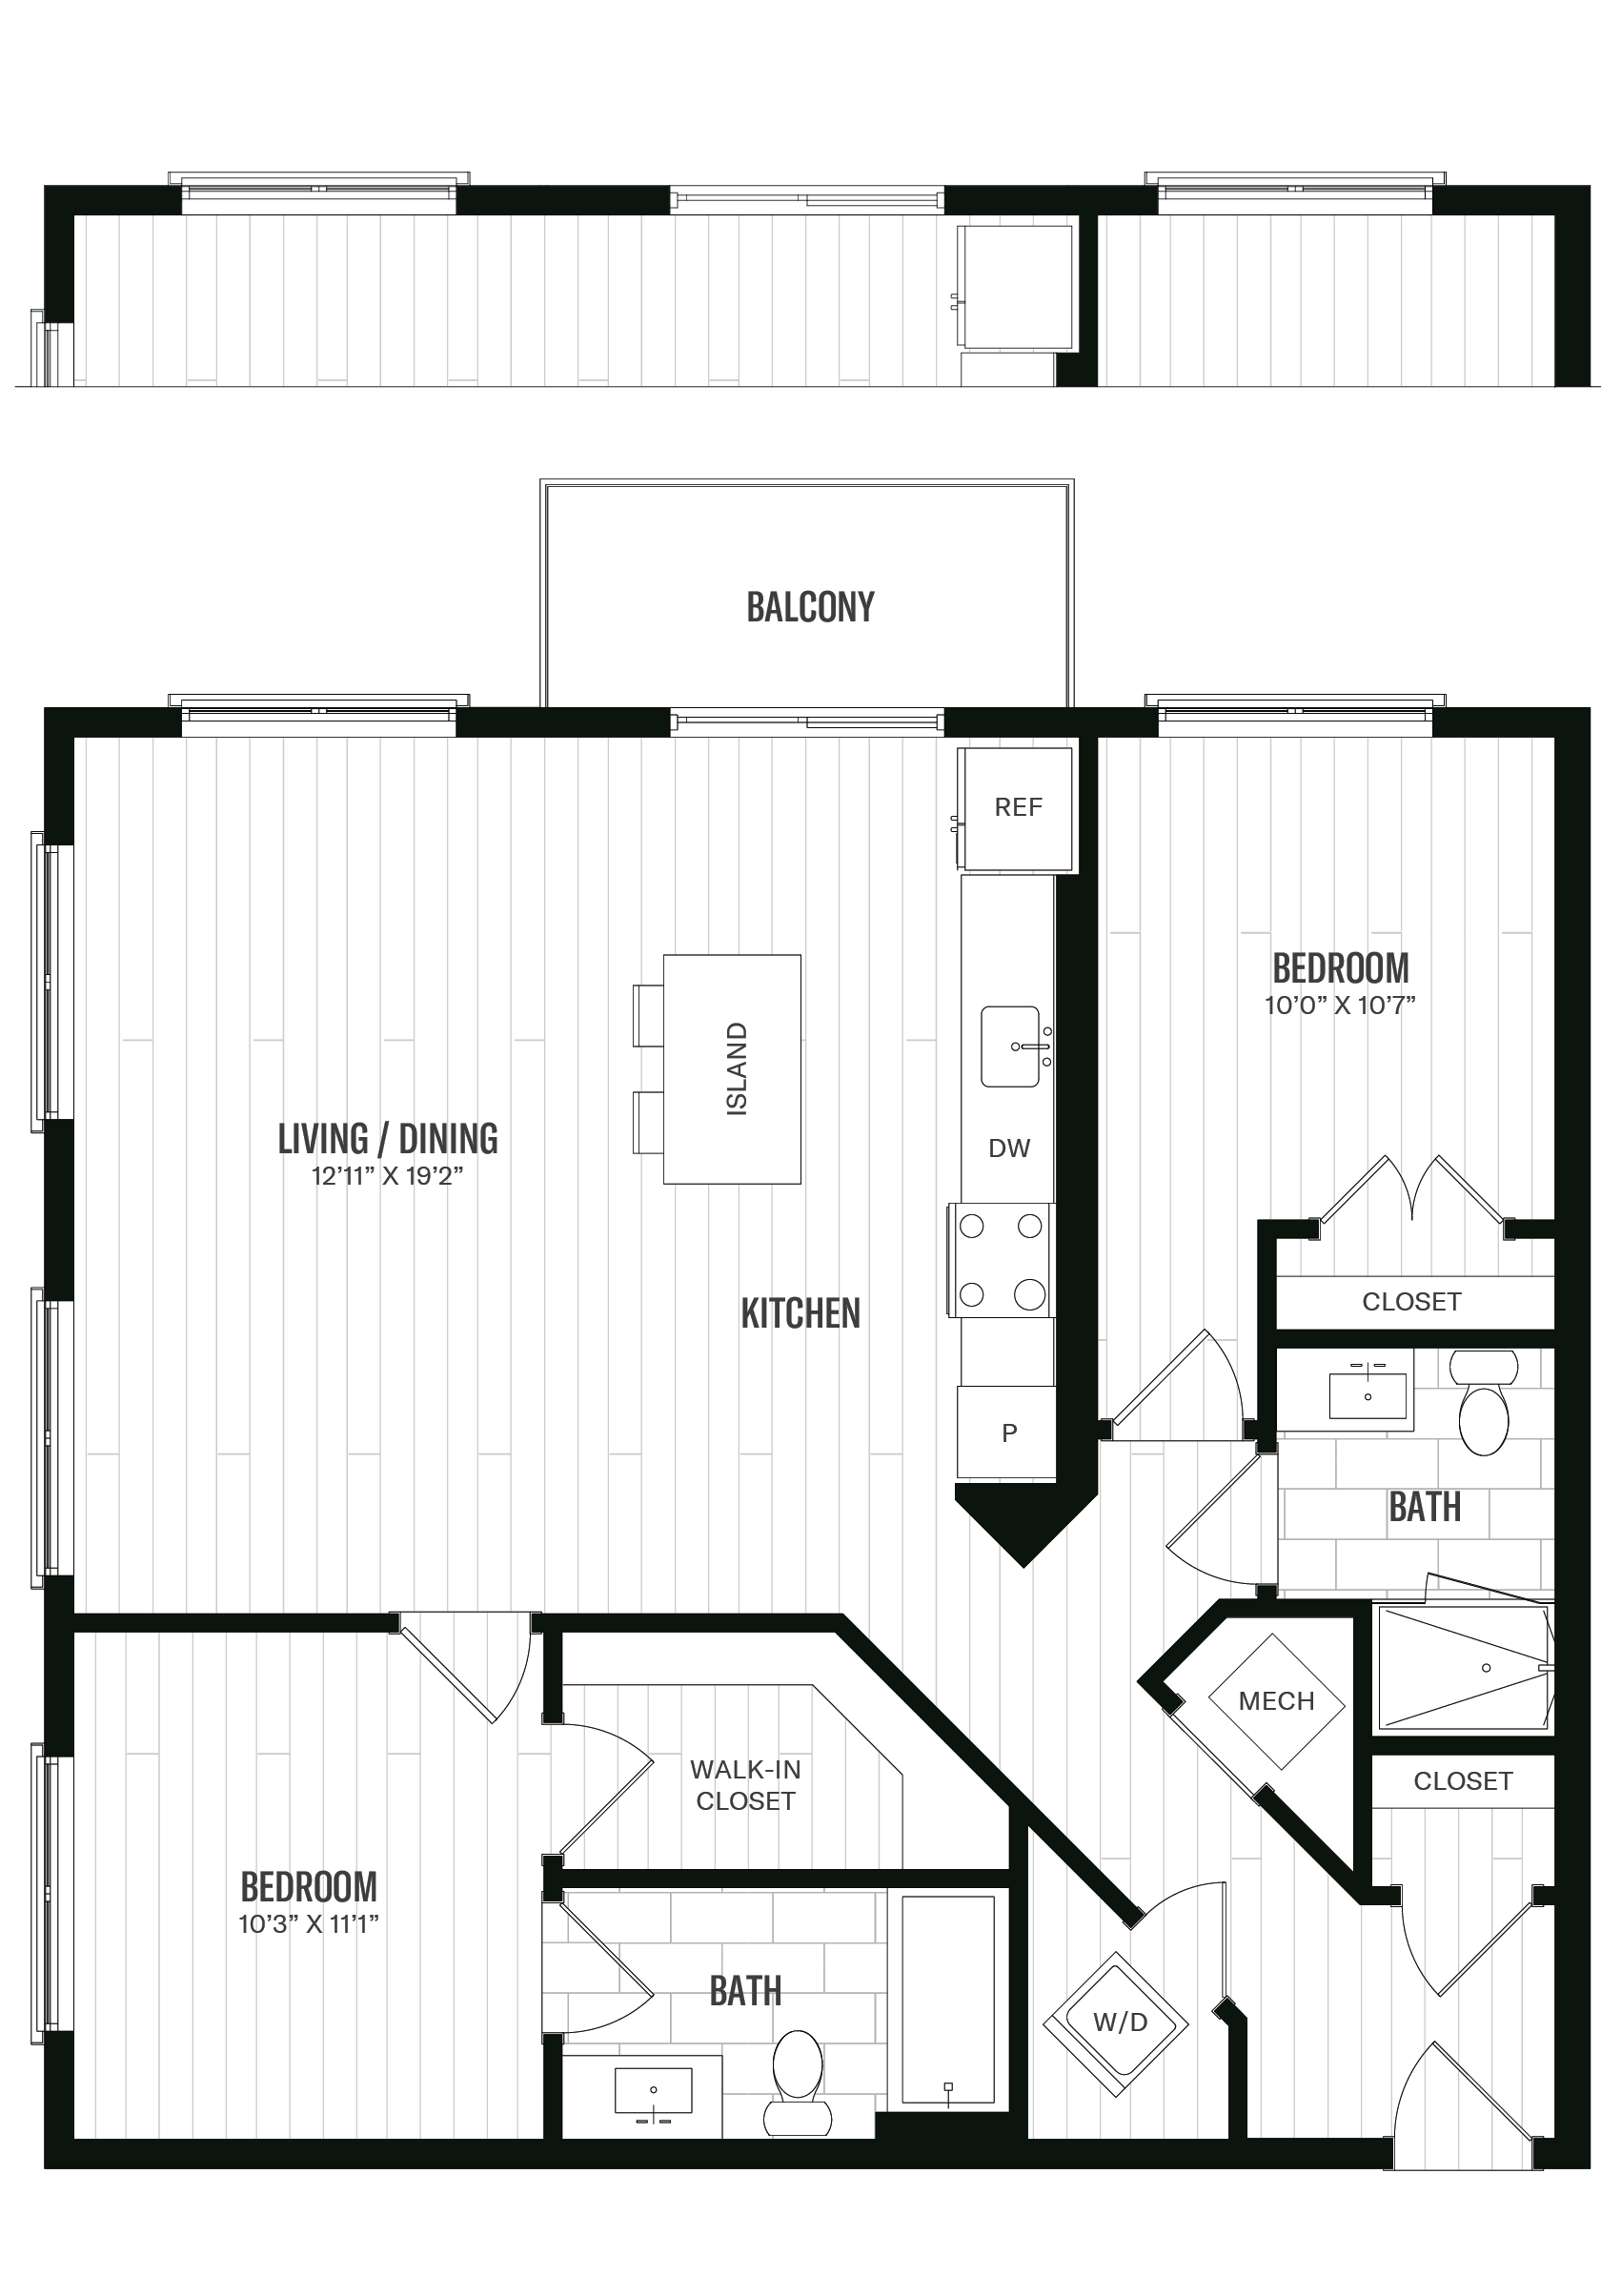 Floorplan image of unit 636